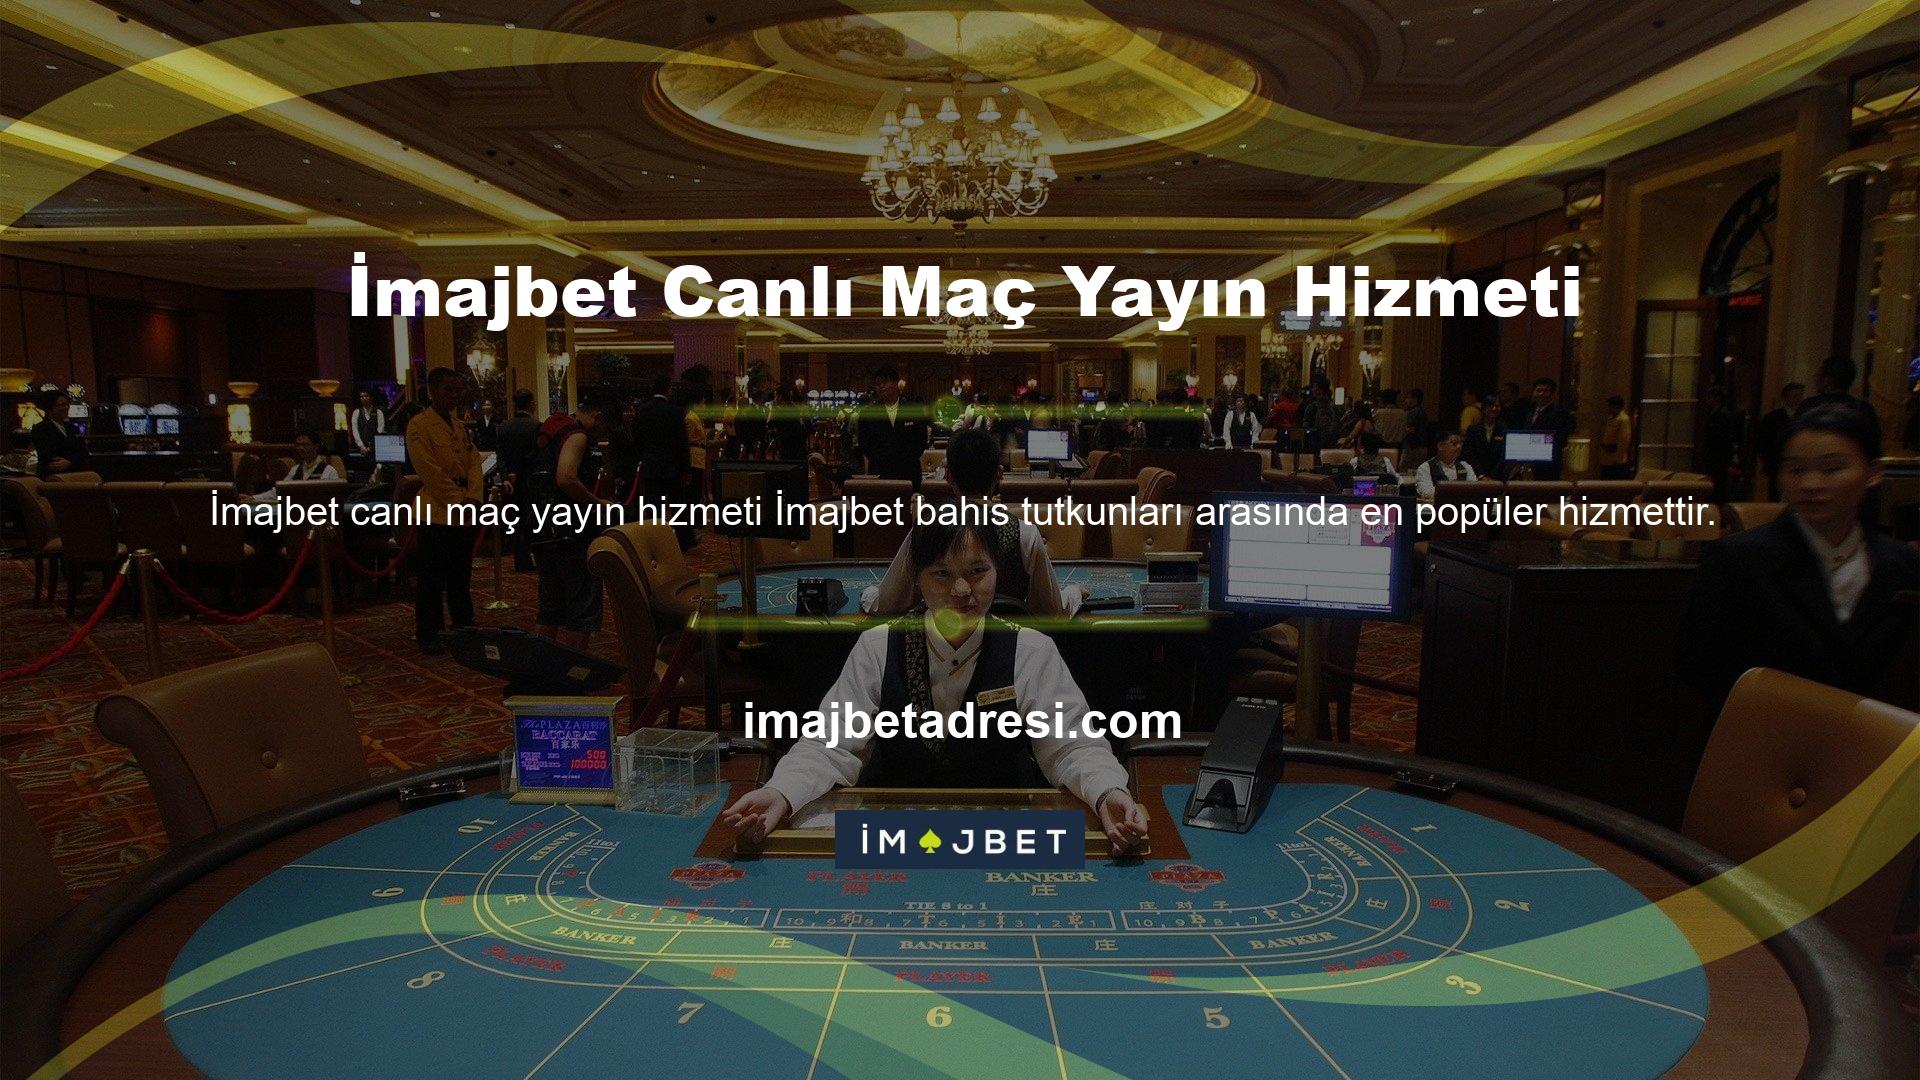 İmajbet, hem Türkiye'de hem de Avrupa'da faaliyet gösteren bir casino sitesidir